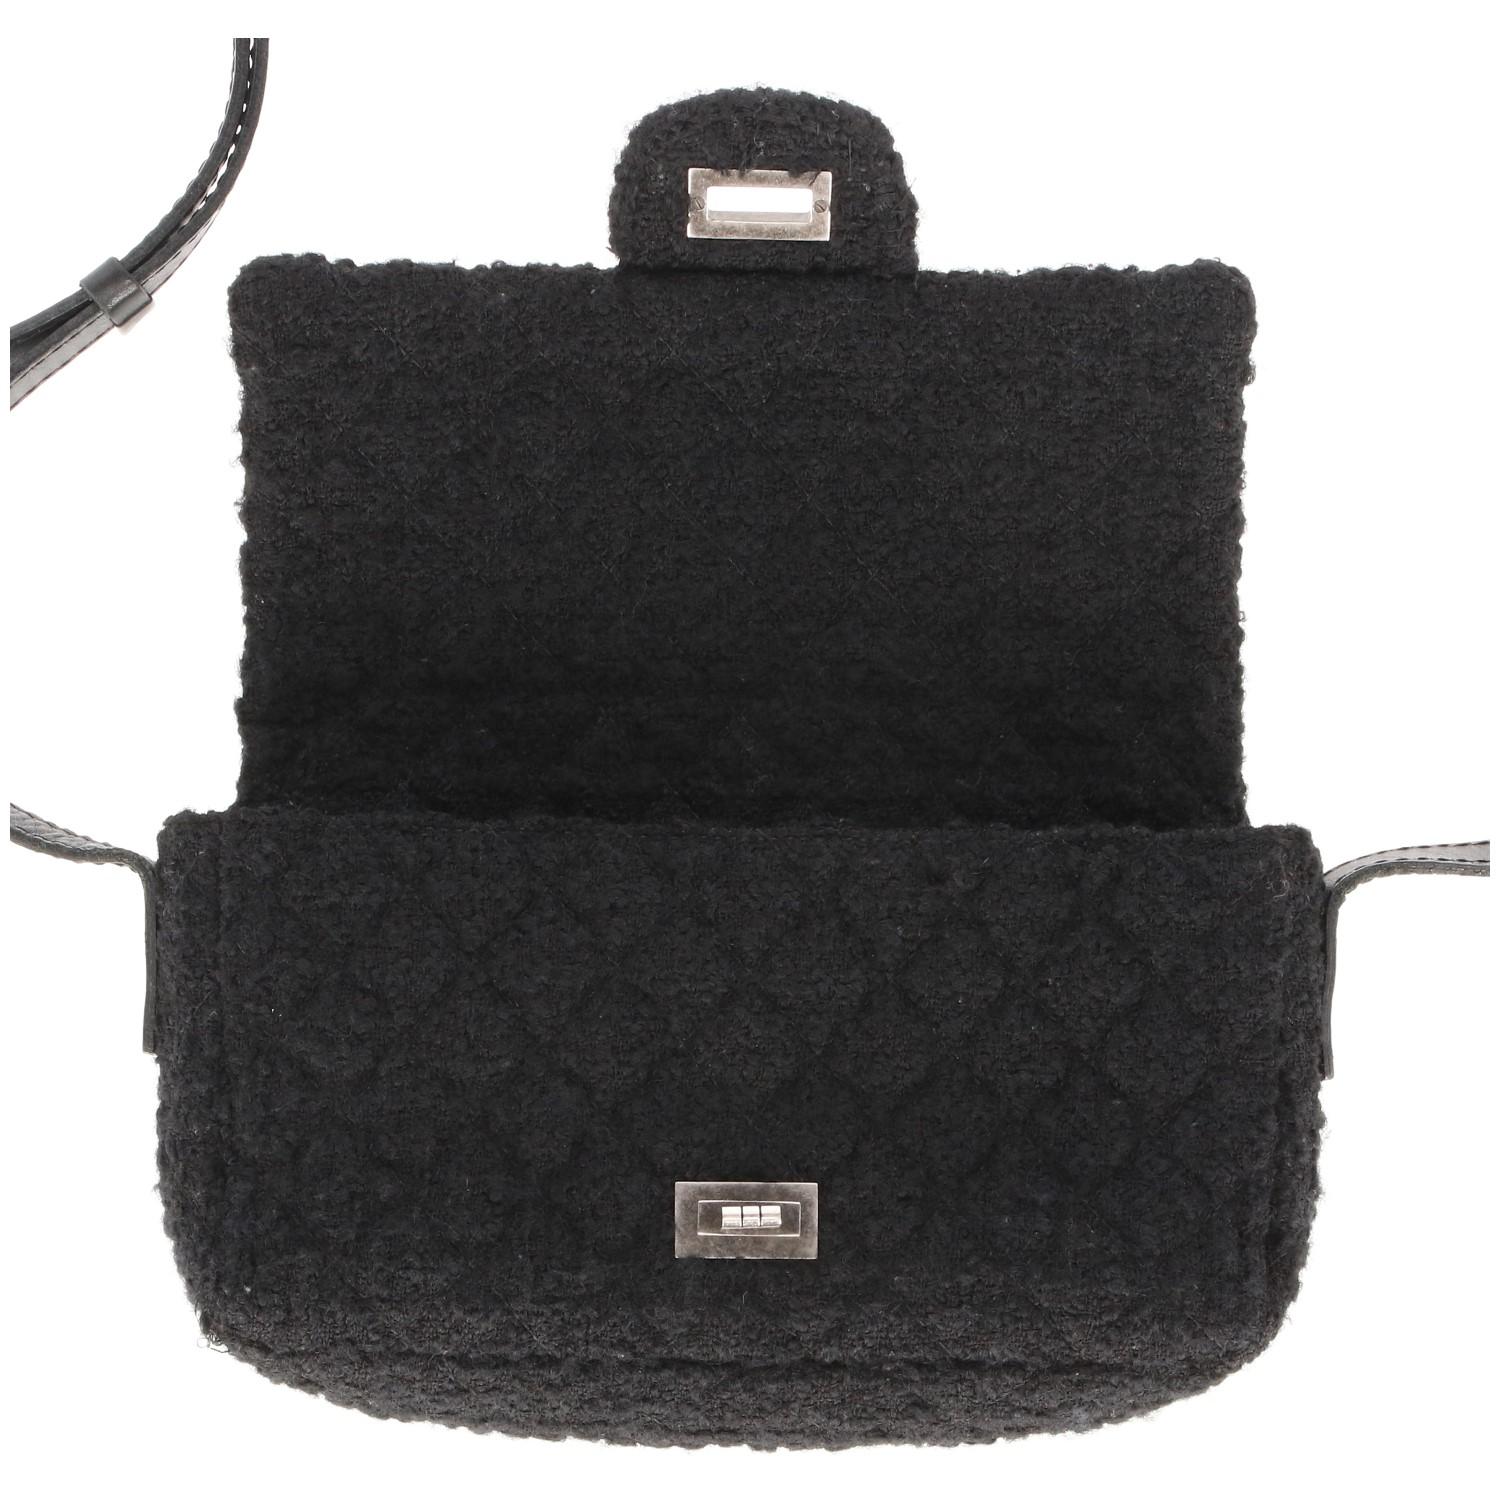 2008-2009s Chanel Black Tweed Vintage Bag 7